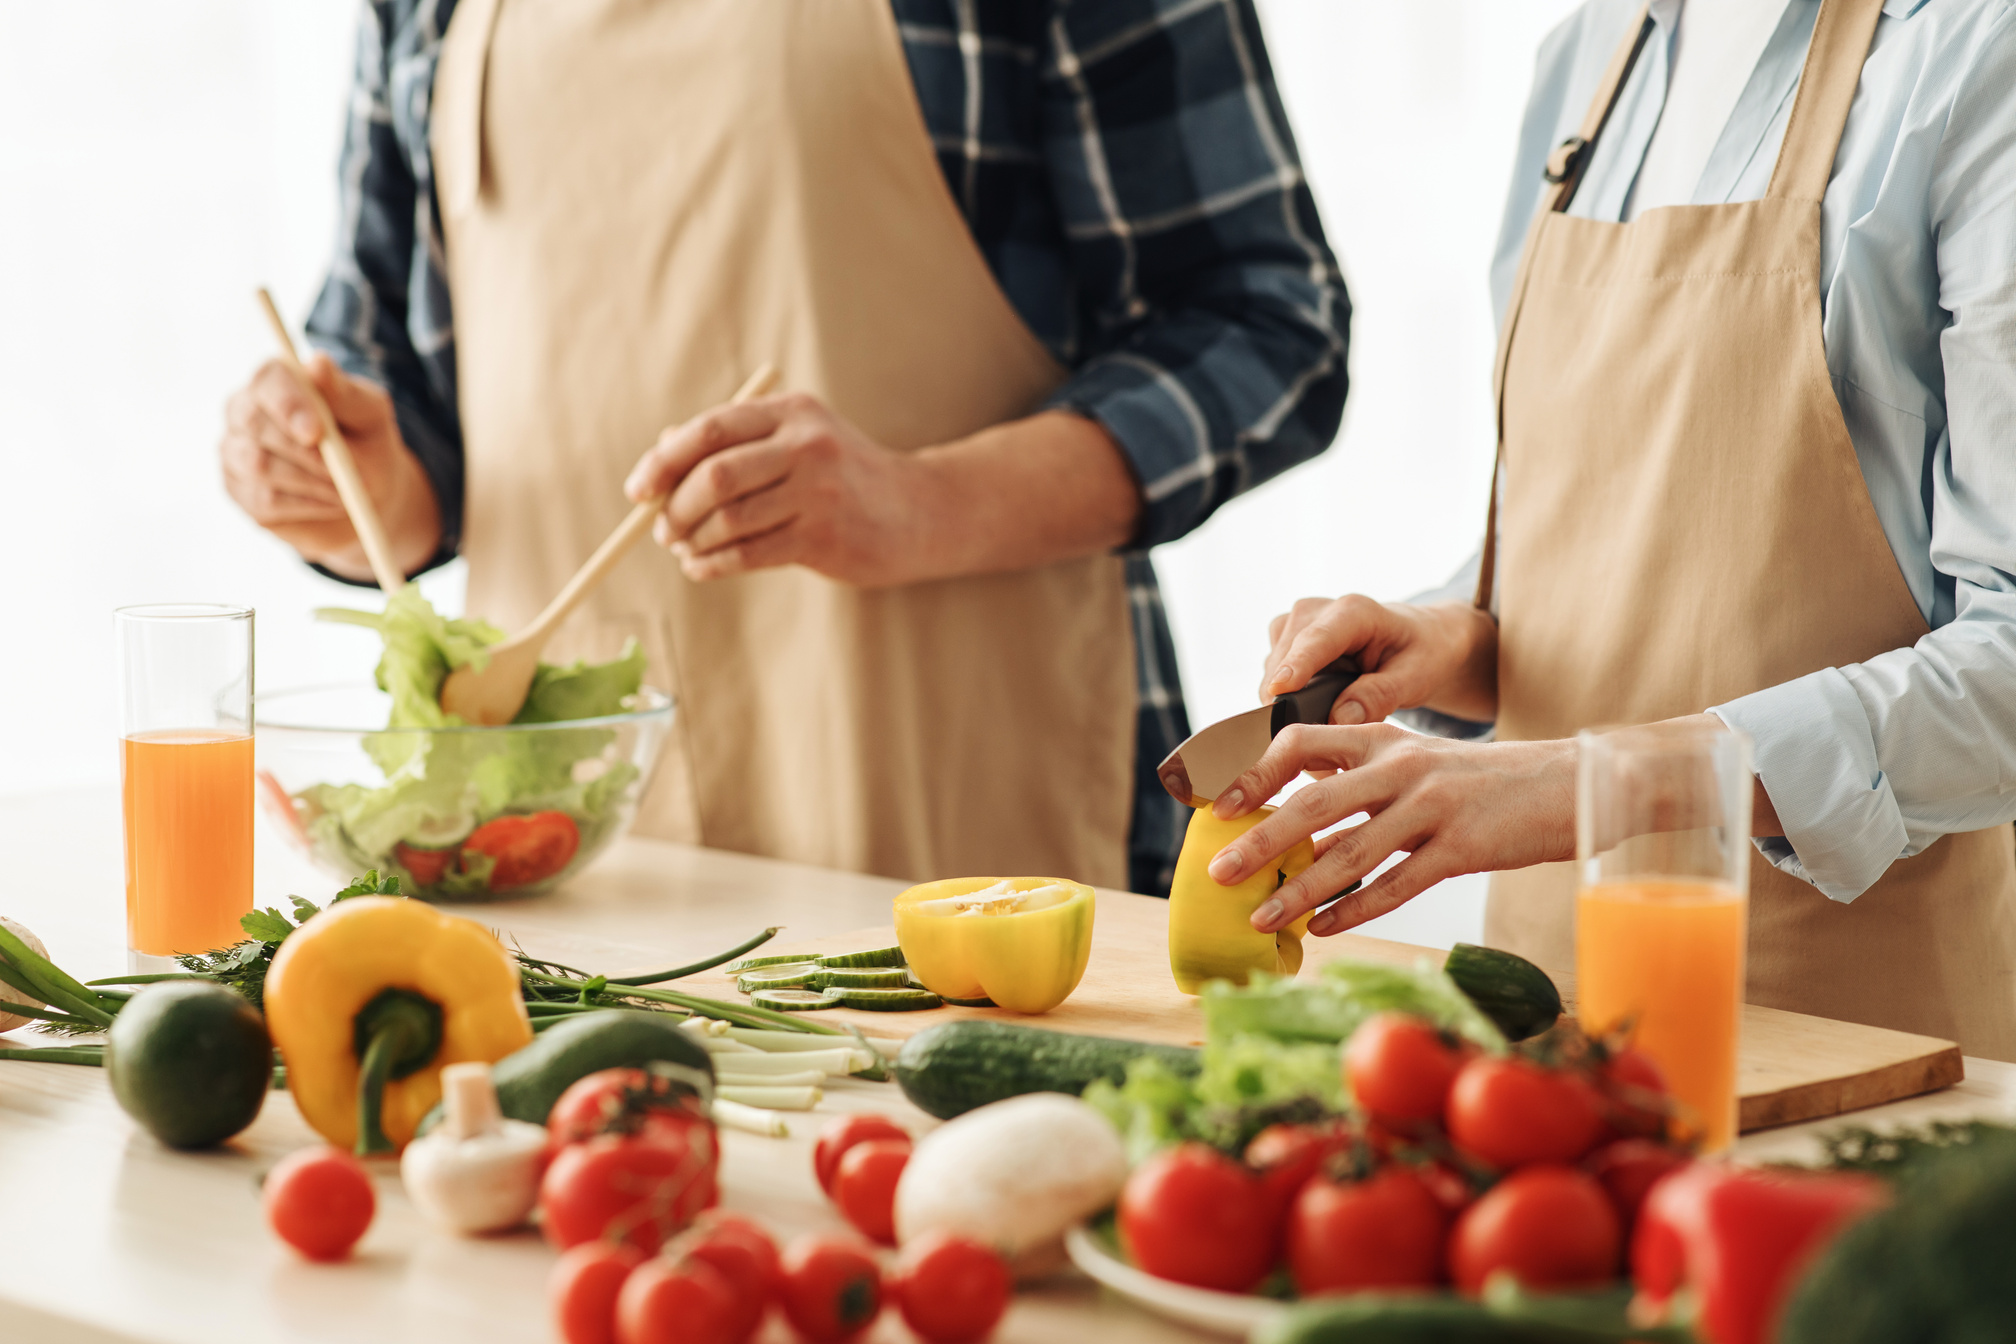 Vegetables for proper nutrition, diet for healthcare